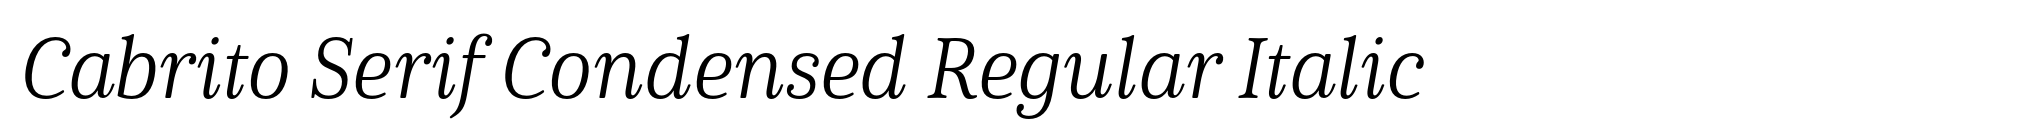 Cabrito Serif Condensed Regular Italic image